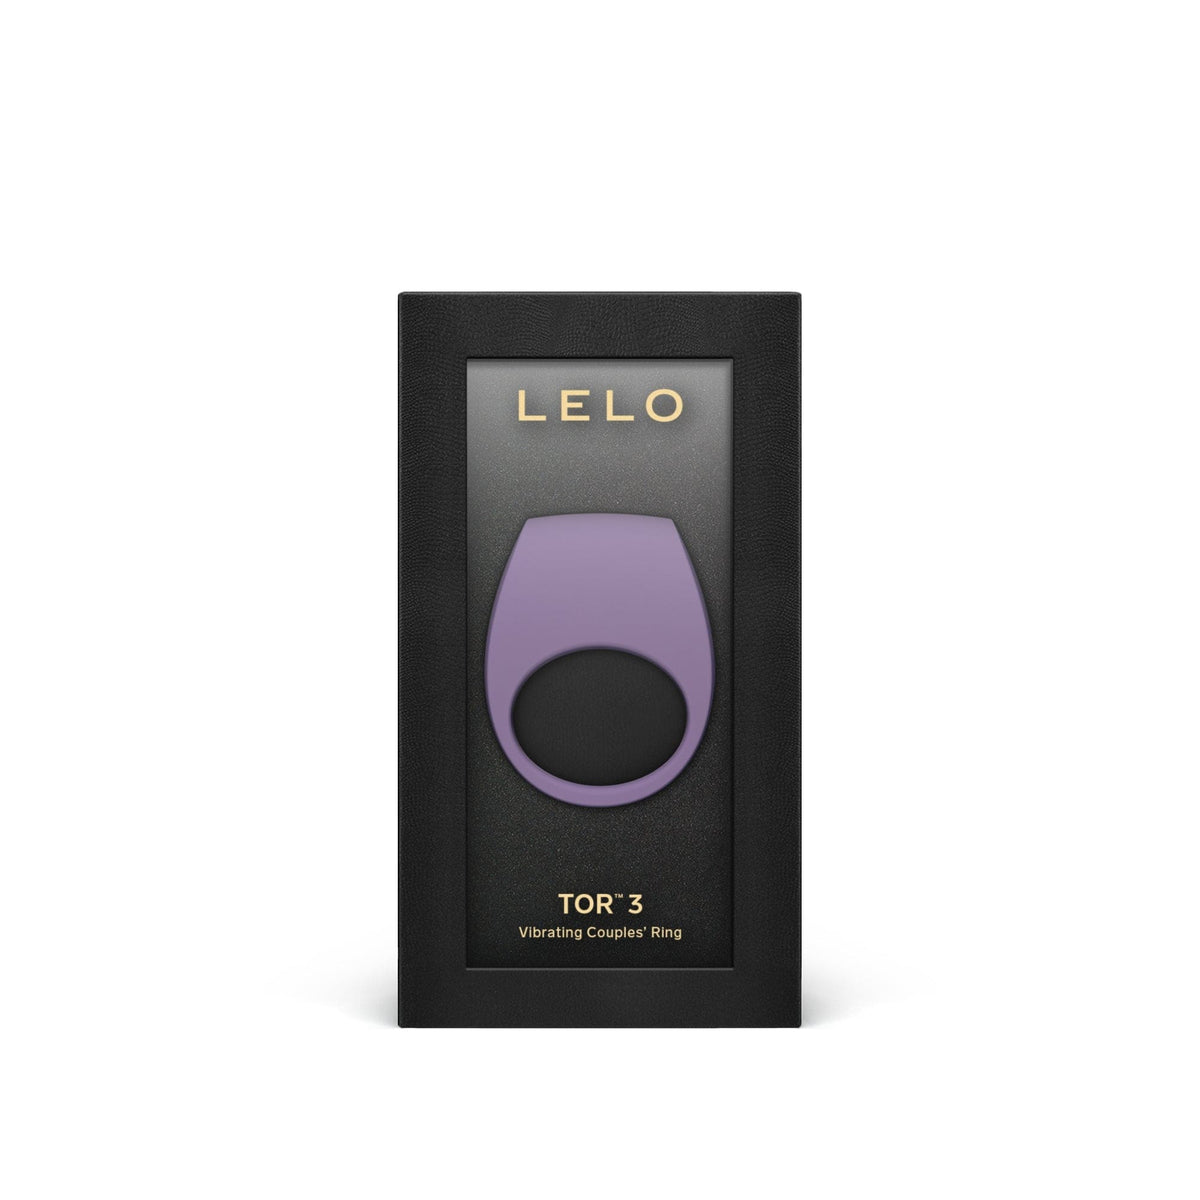 LELO TOR 3 Pleasure Ring - Violet Dust For Him Lelo   